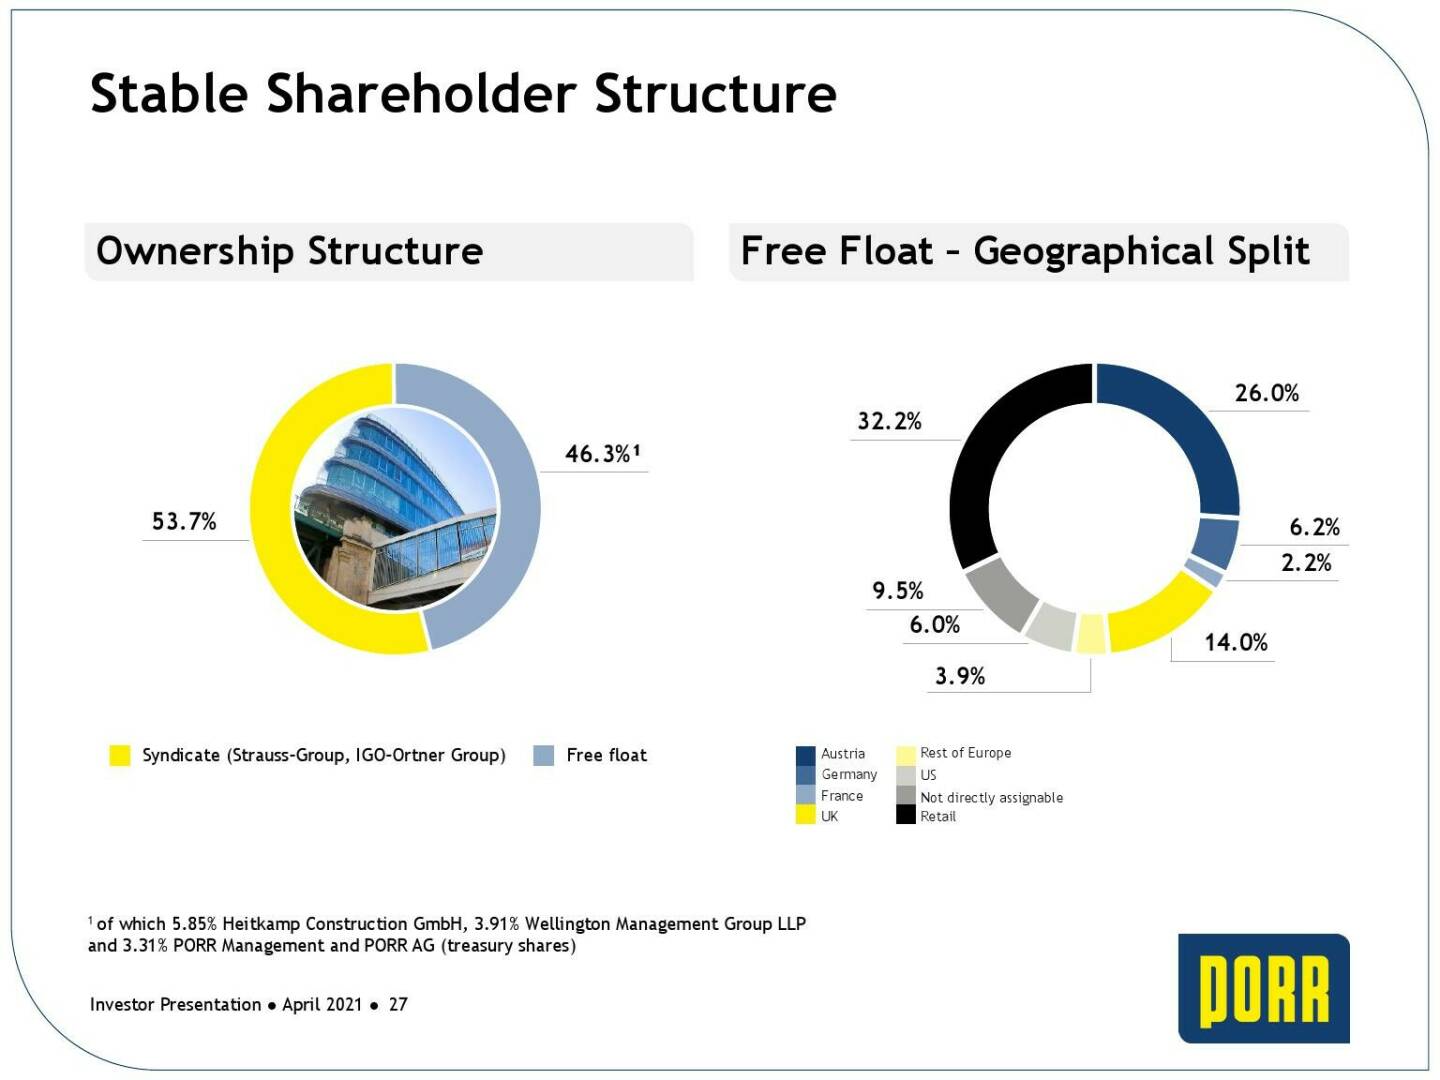 Porr - Stable shareholder structure 